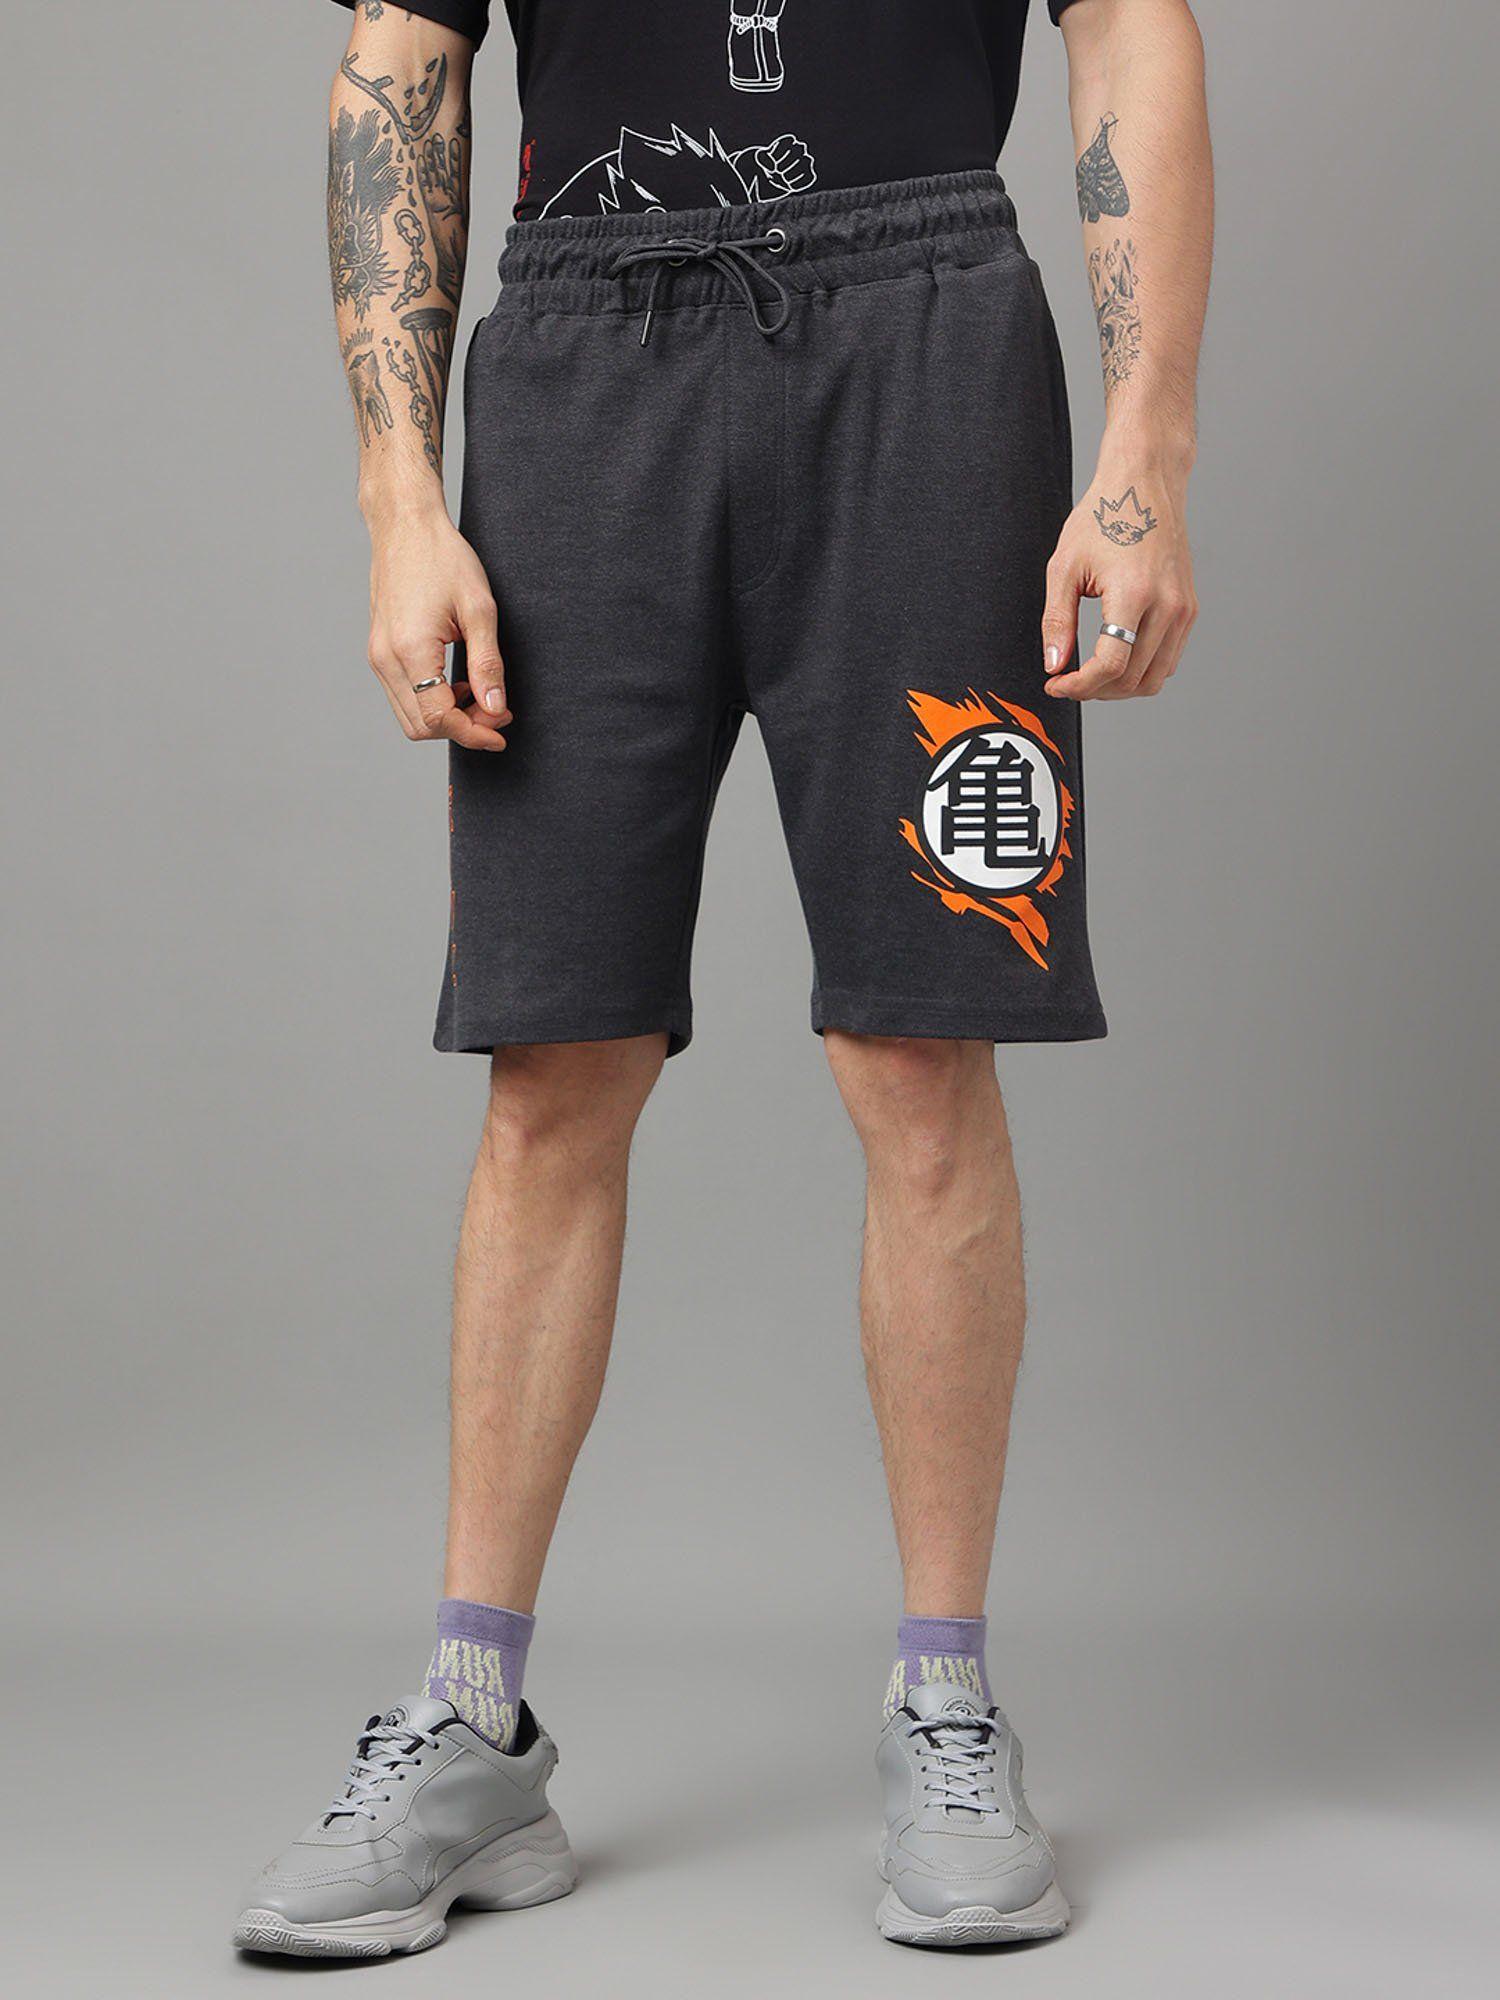 dragon ball z printed grey shorts